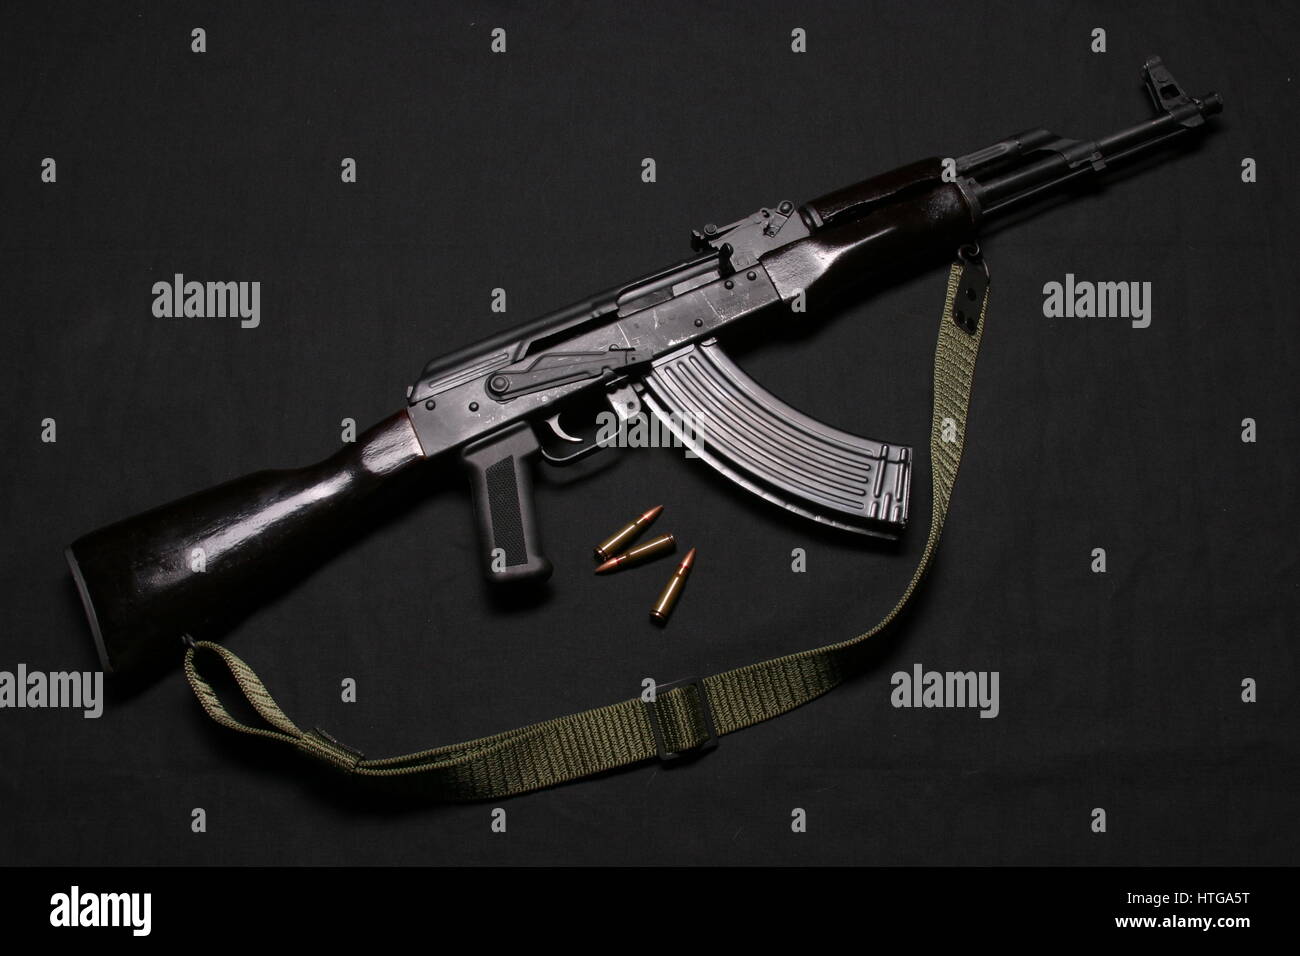 AK-47 Rifle Stock Photo